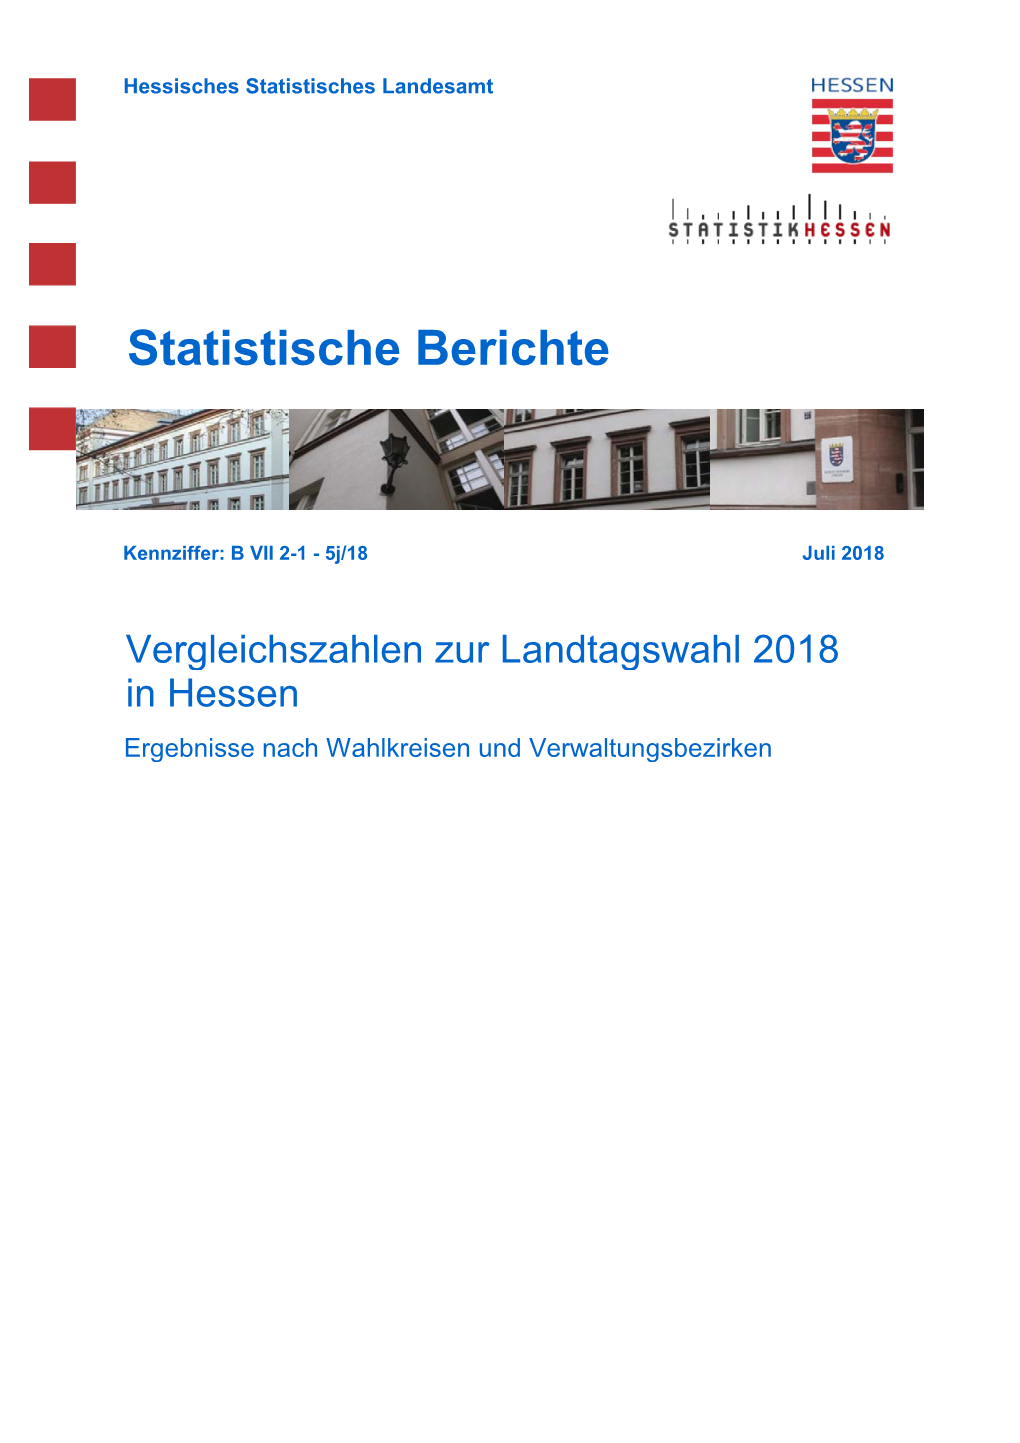 Vergleichszahlen Zur Landtagswahl 2018 in Hessen Ergebnisse Nach Wahlkreisen Und Verwaltungsbezirken Hessisches Statistisches Landesamt, Wiesbaden